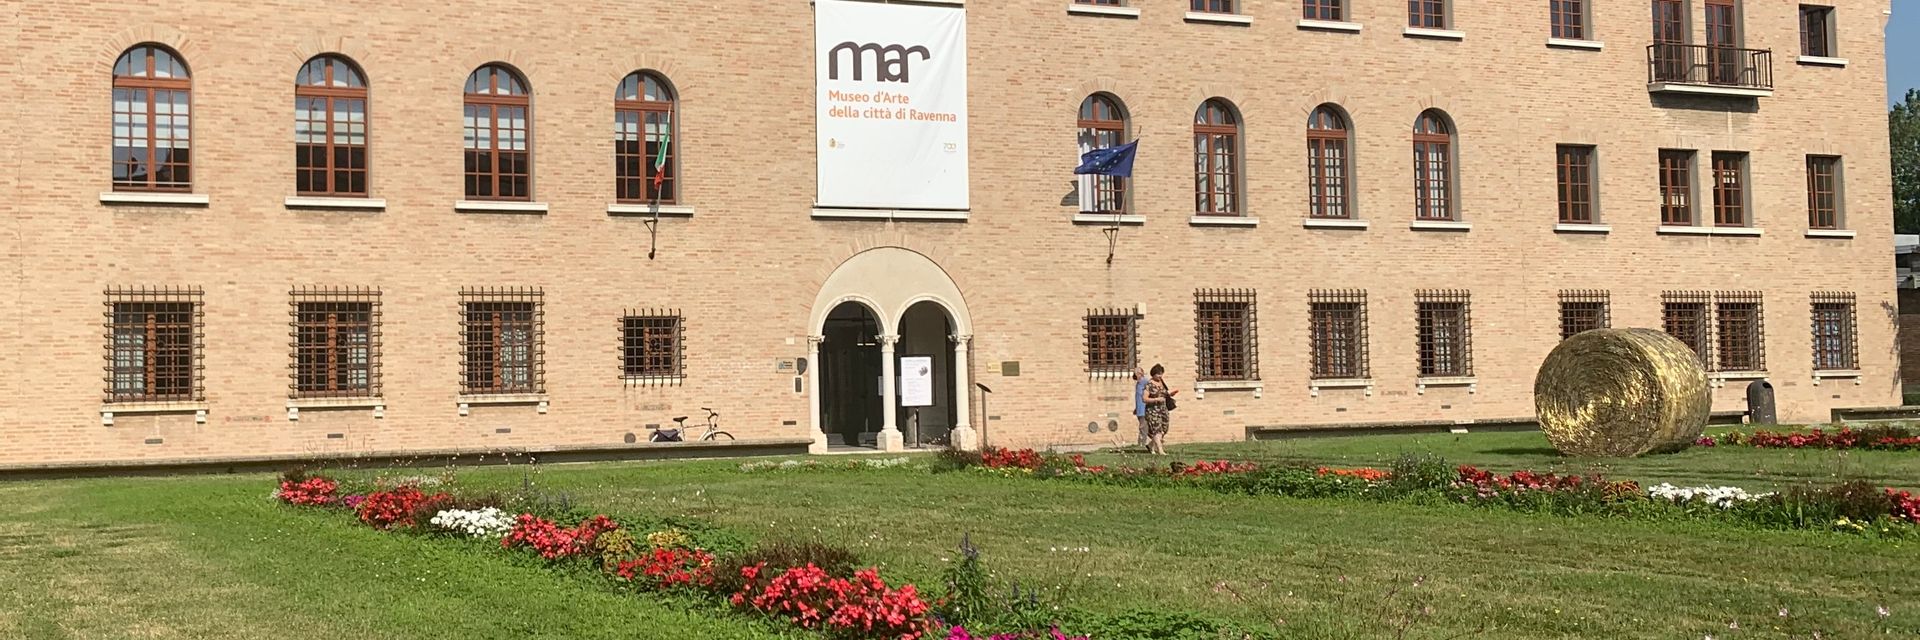 MAR - Museo de Arte de la ciudad de Rávena